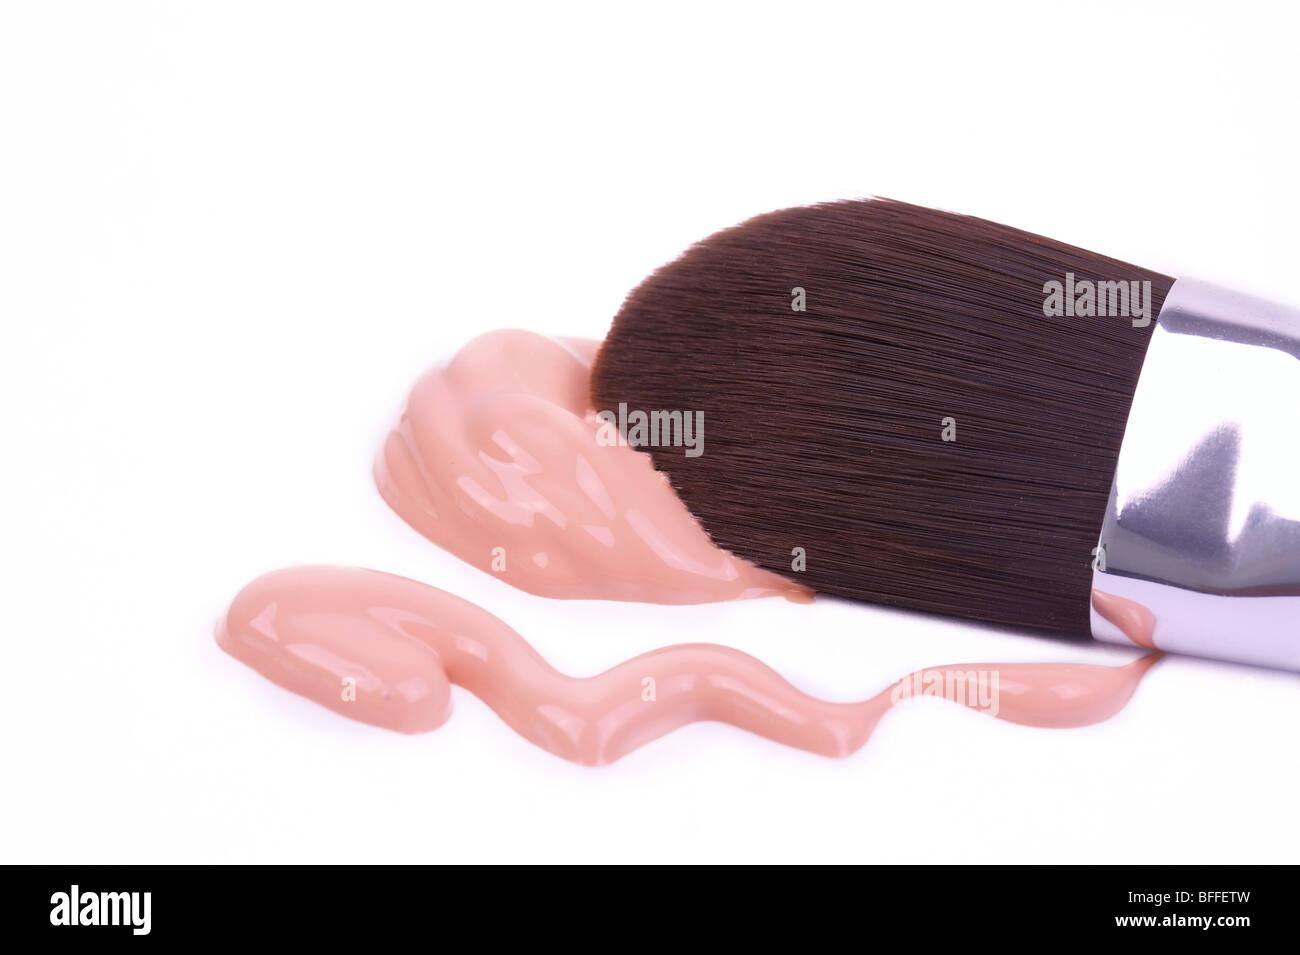 Make-up brush with foundation Stock Photo